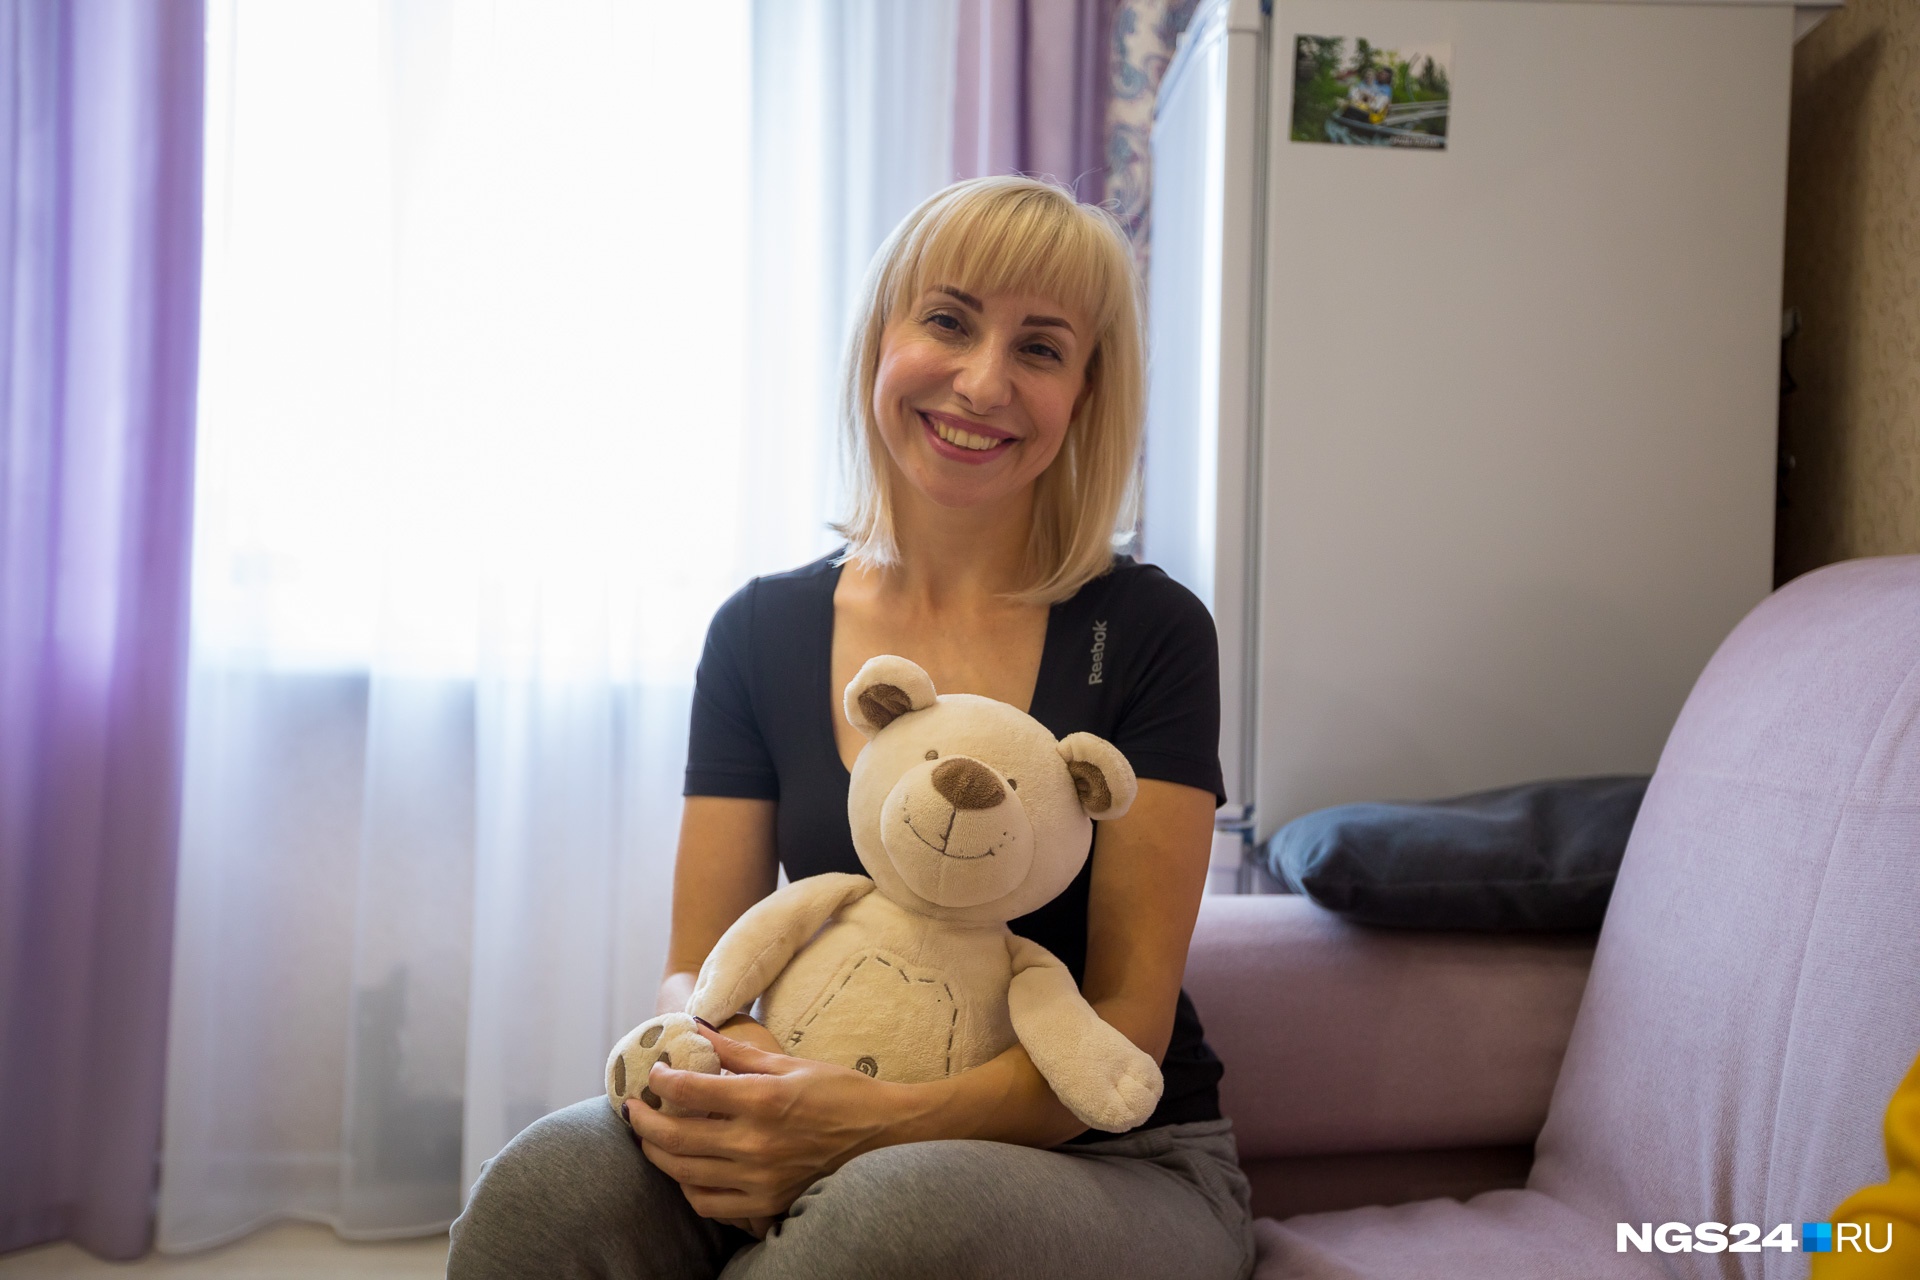 «Моё сердце уже занято»: как живет самая красивая в Красноярске воспитатель детсада